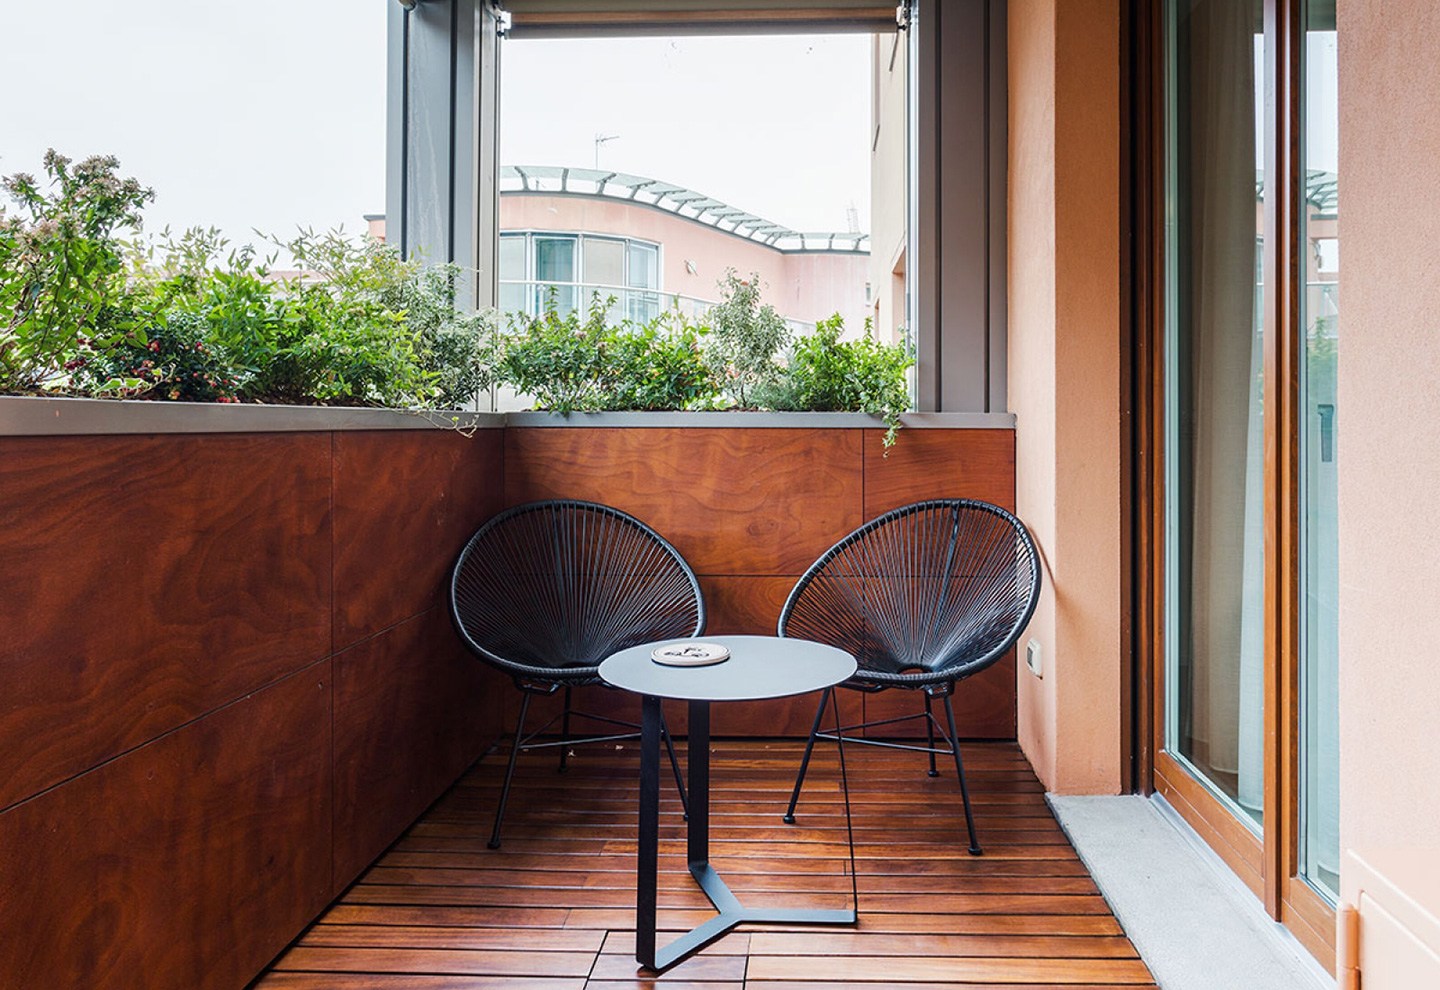 Квартира с лаконичным дизайном в Милане – проект студии Nomade Architettura